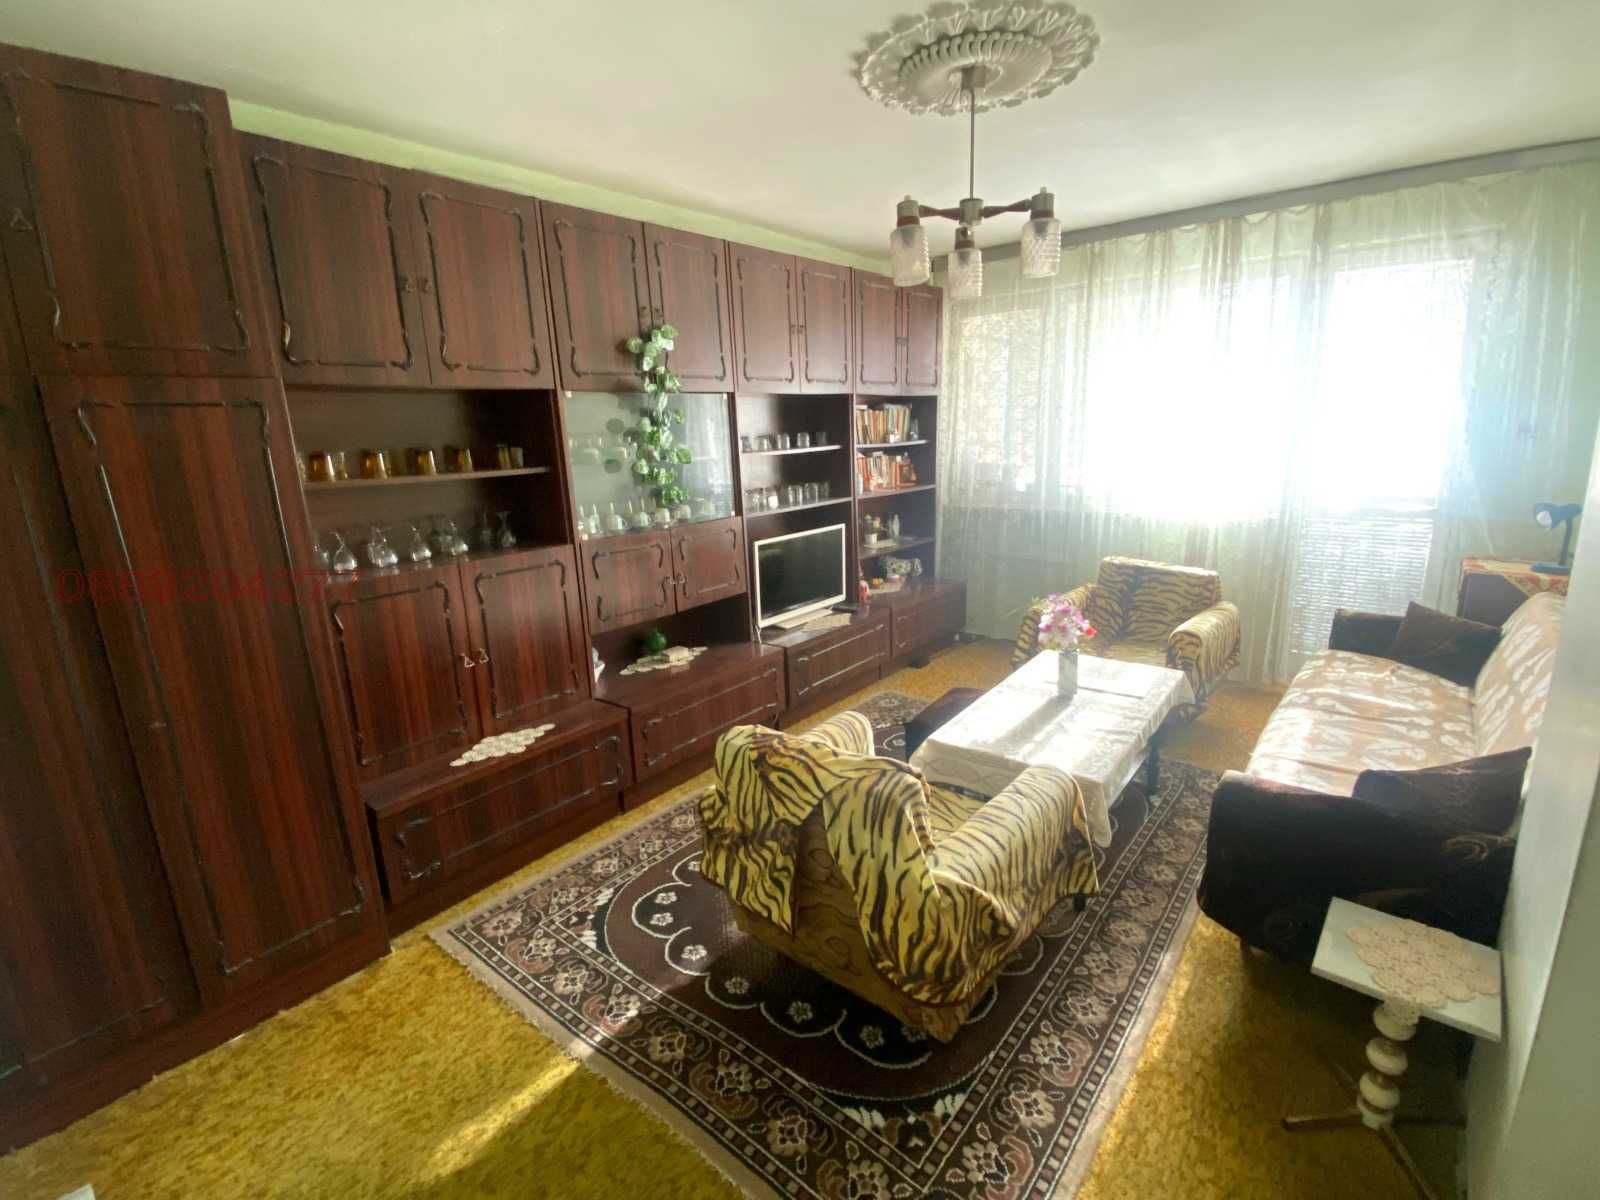 Евтини мебели от апартамент, може и само една мебел или един модул